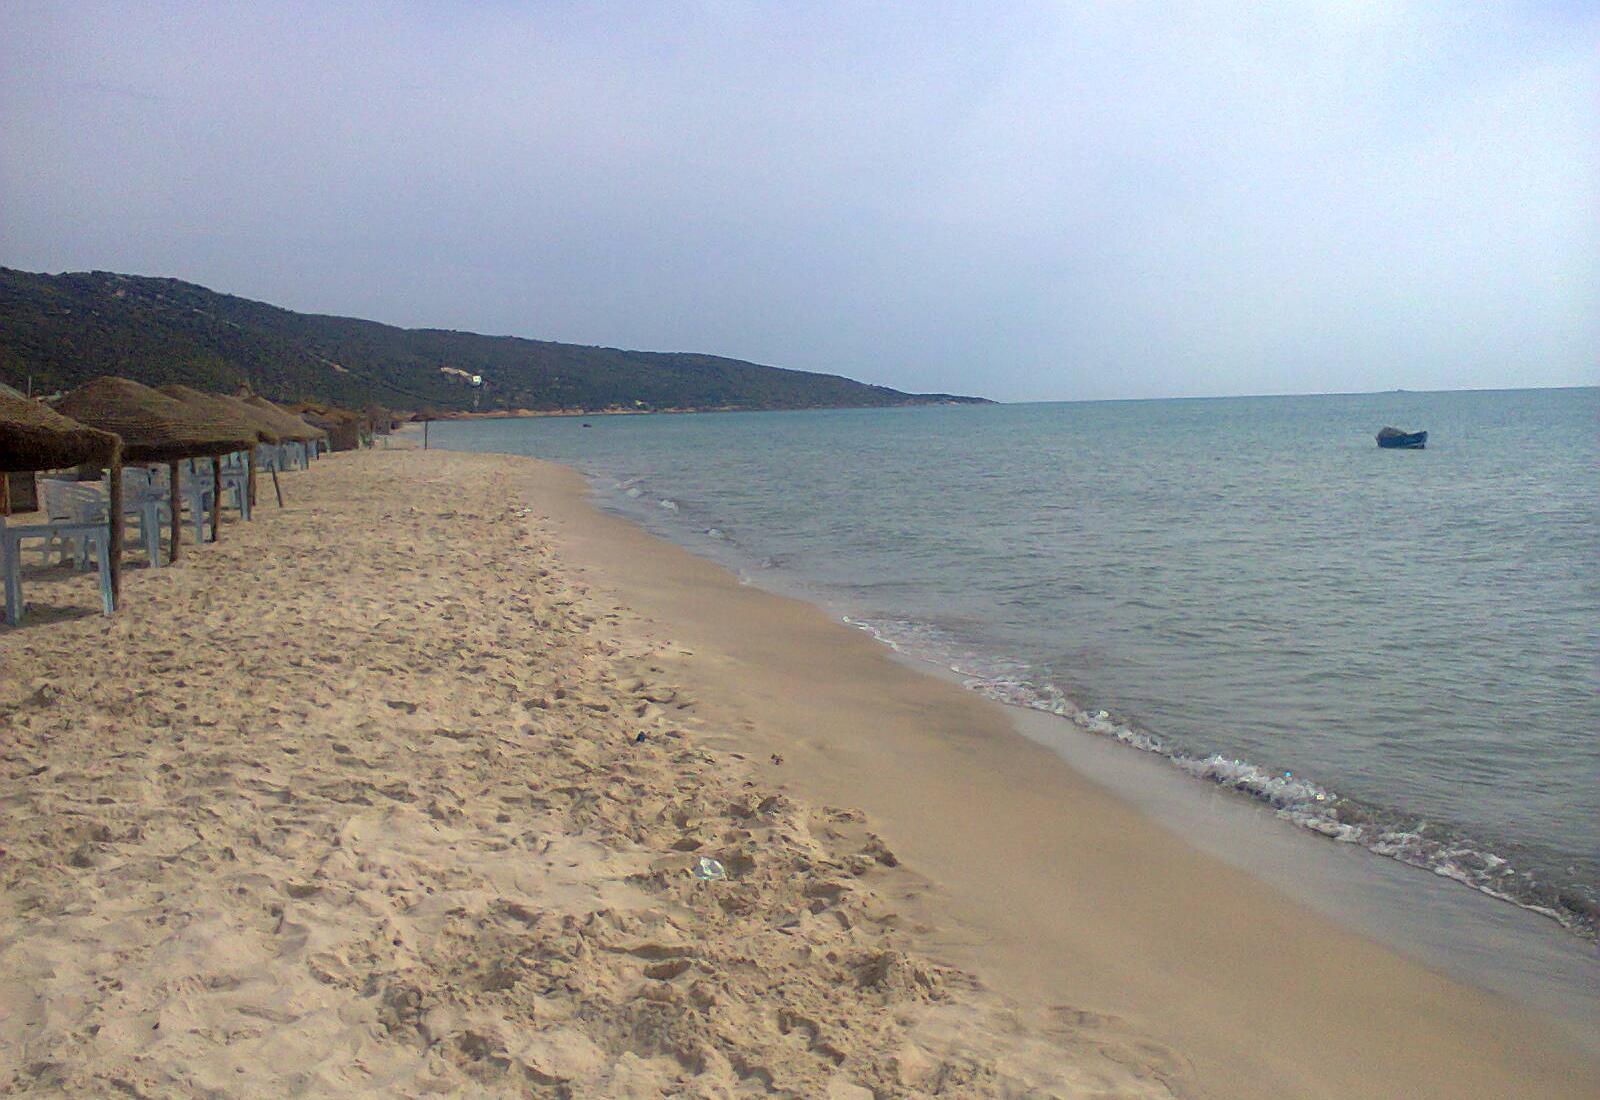 Sandee - Ghar Al Milh Beach